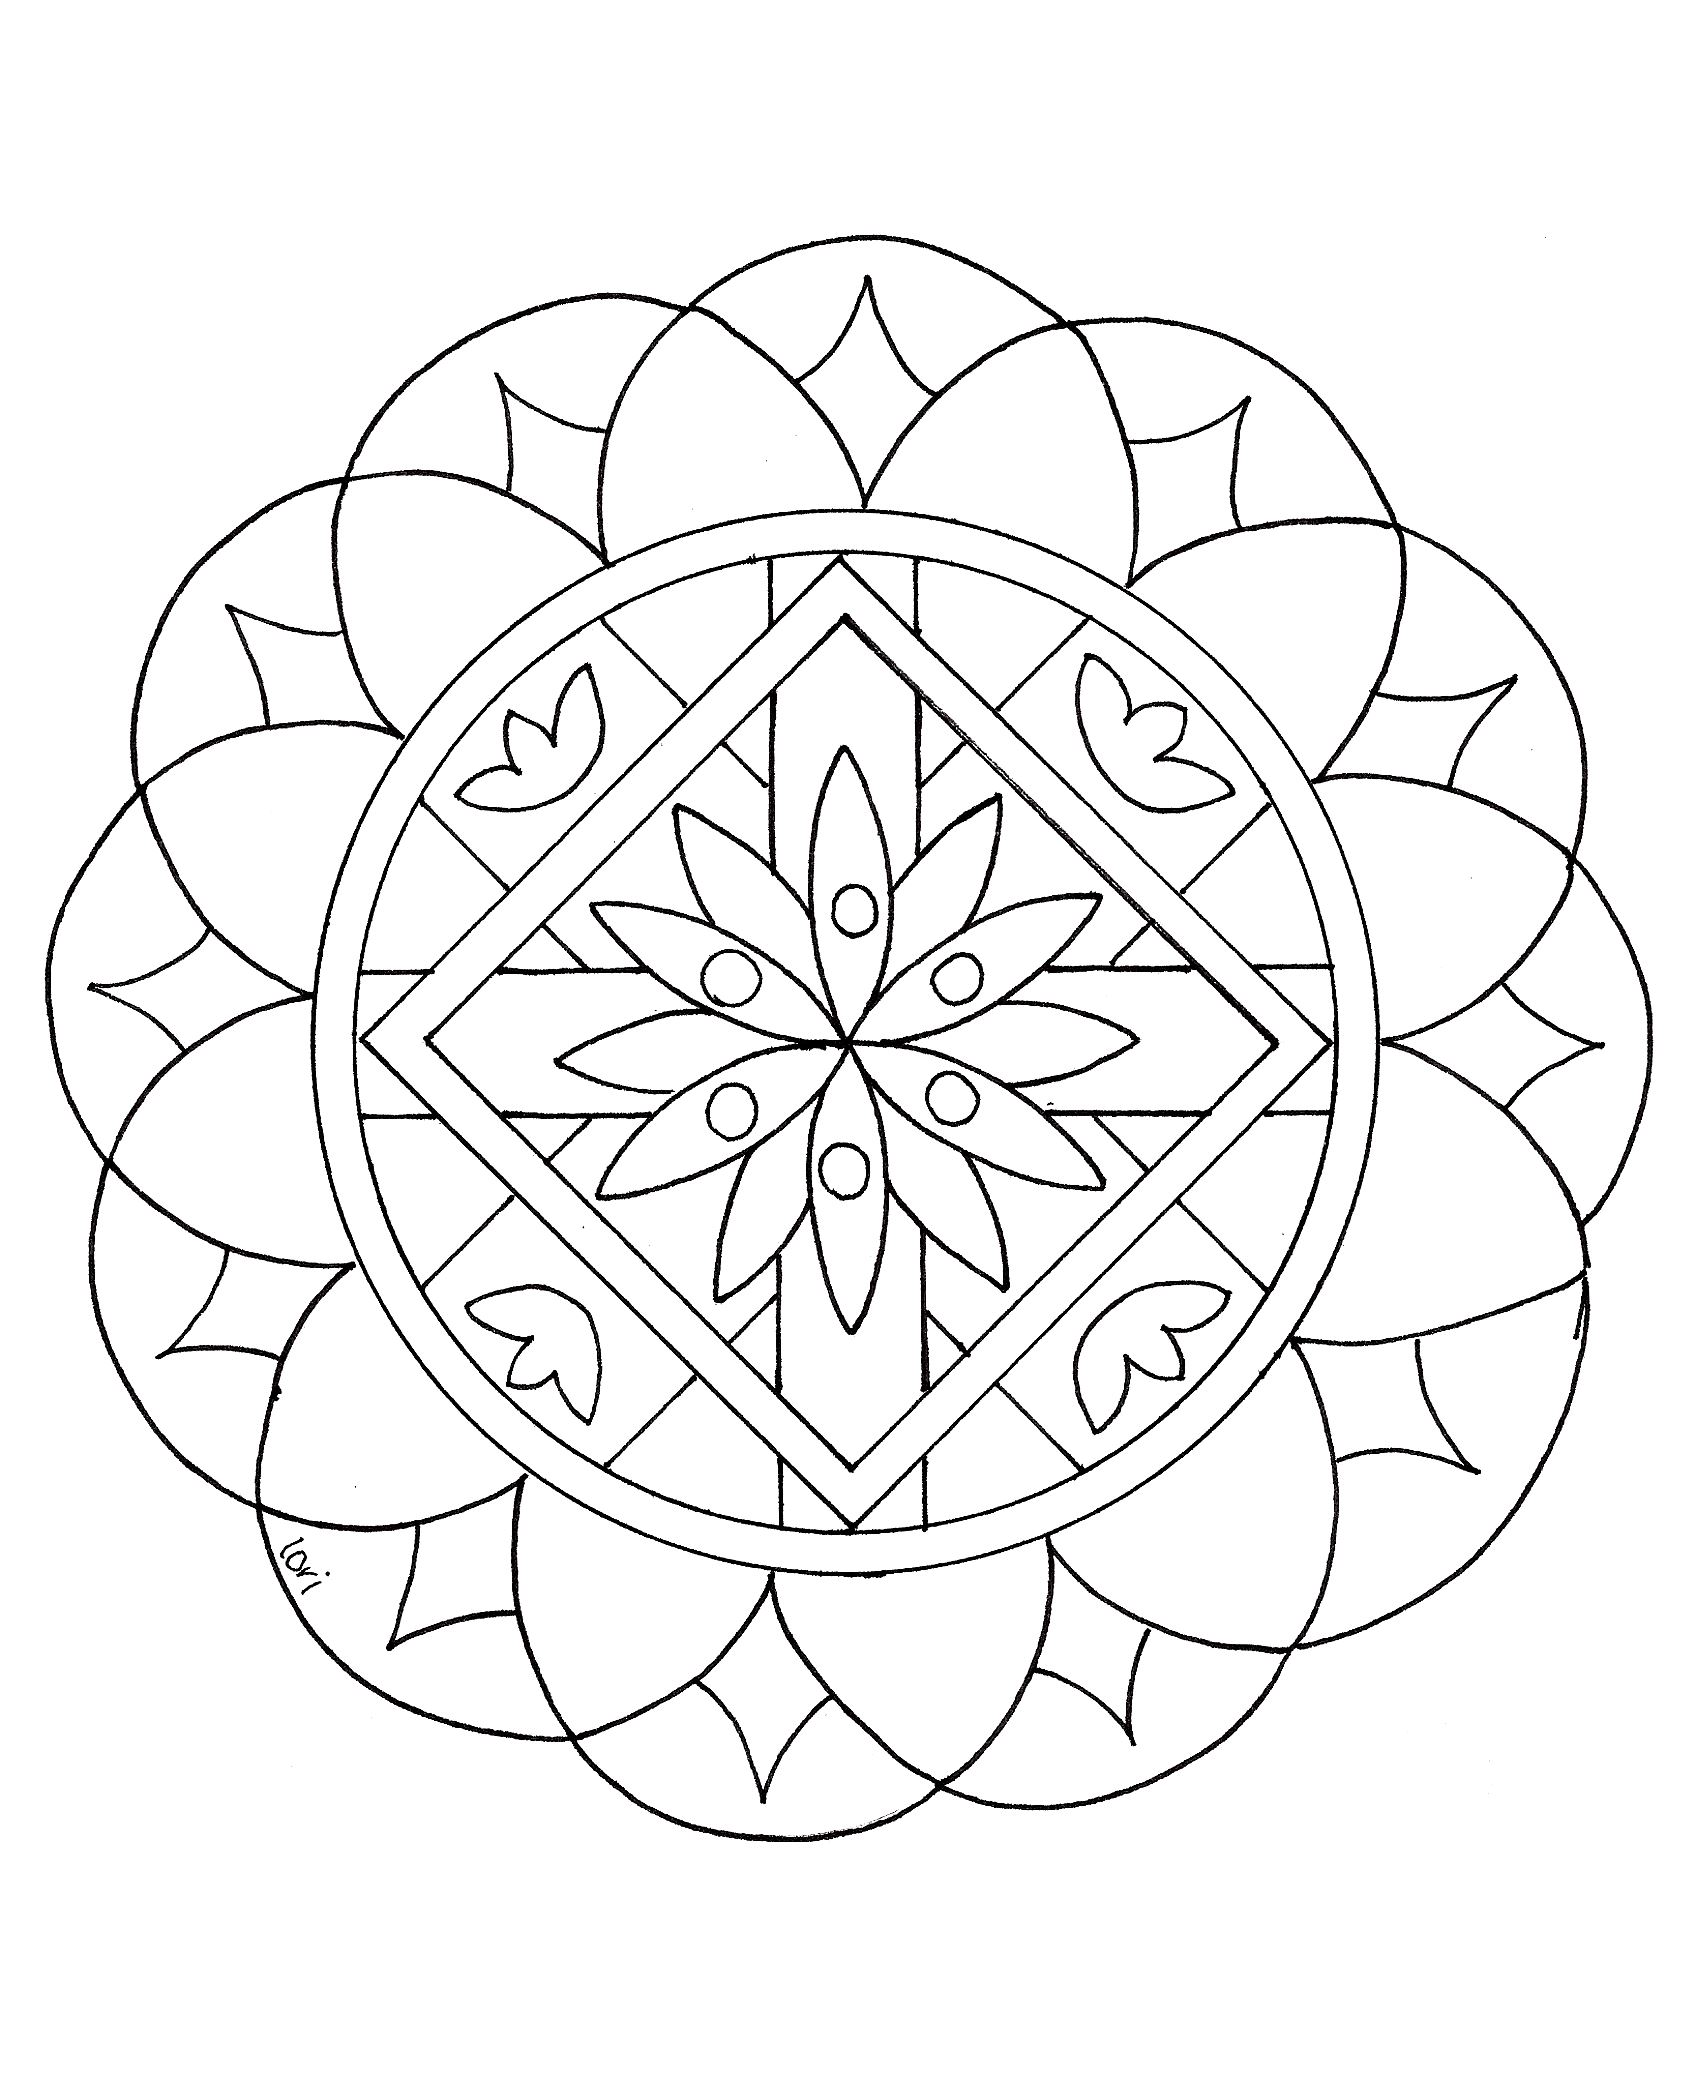 Simple mandala drawing, looking like a big flower